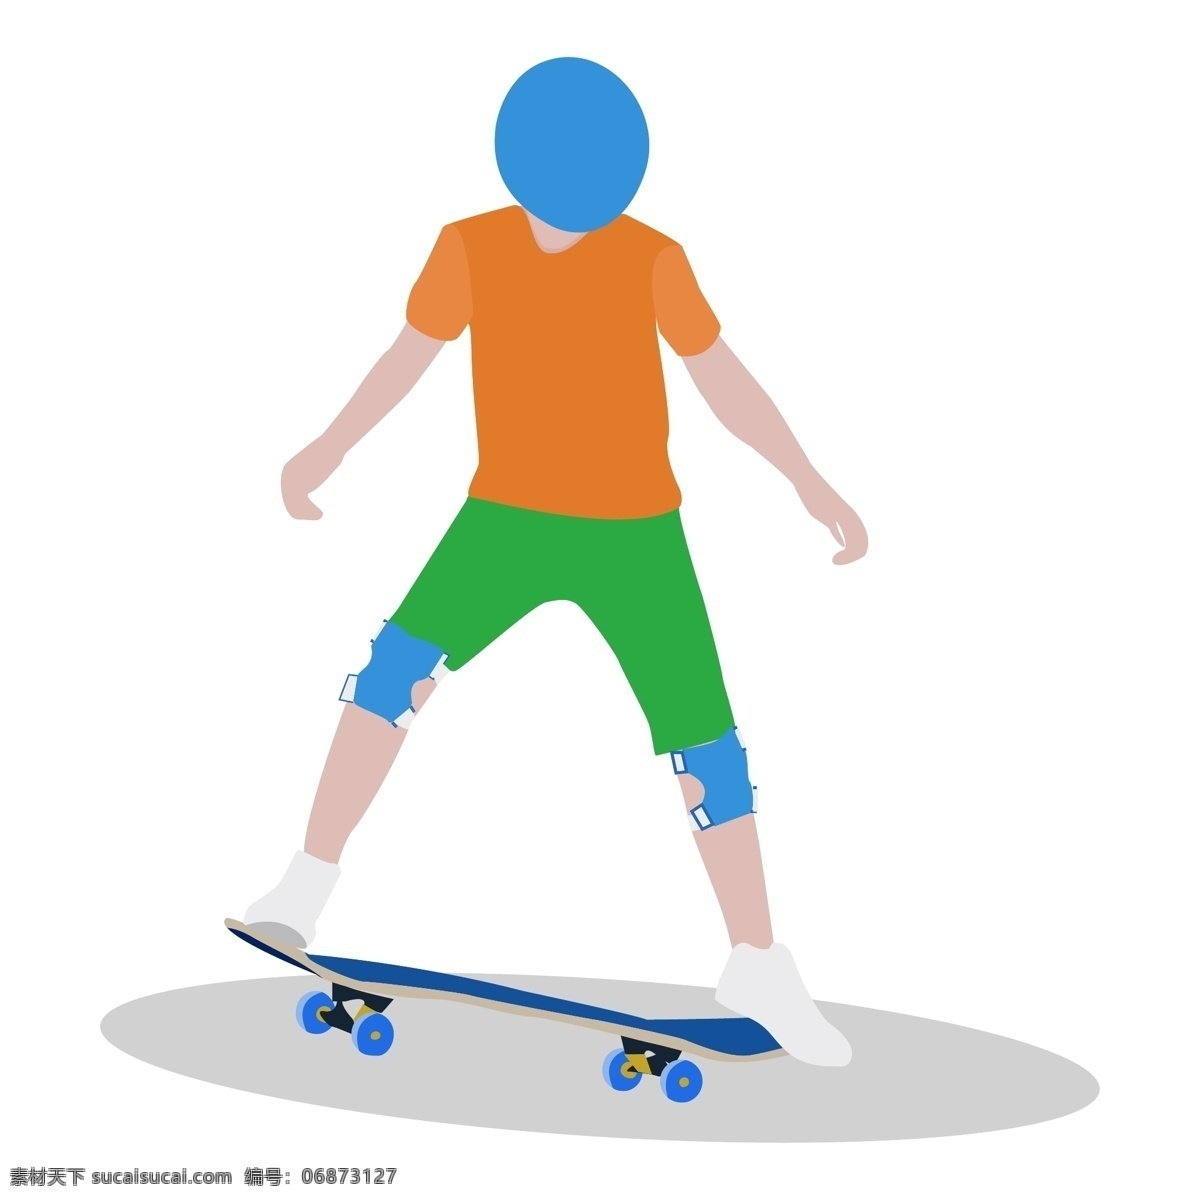 玩 滑板 少年 矢量 玩滑板 青少年 男孩 大男孩 护膝 护具 头盔 运动 极限运动 卡通手绘